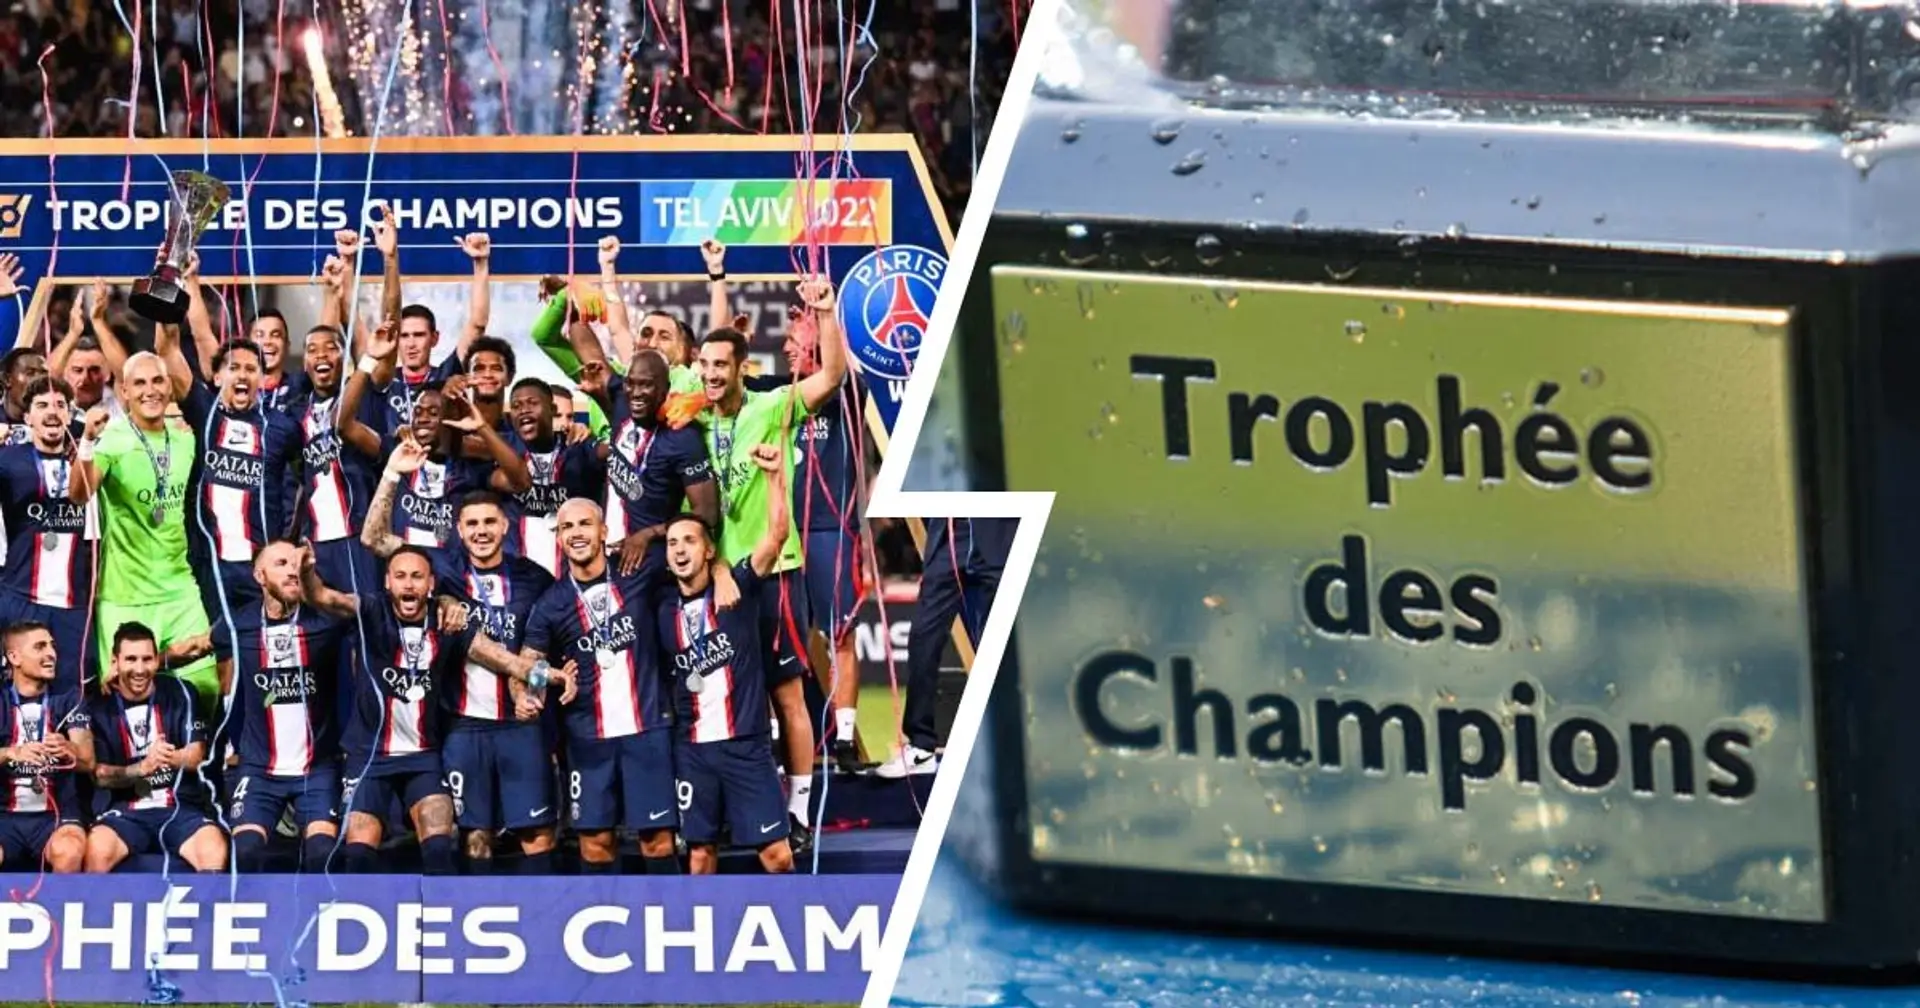 Le Trophée des Champions va finalement se jouer au Parc des Princes - mais le PSG ne sera pas l'équipe qui reçoit